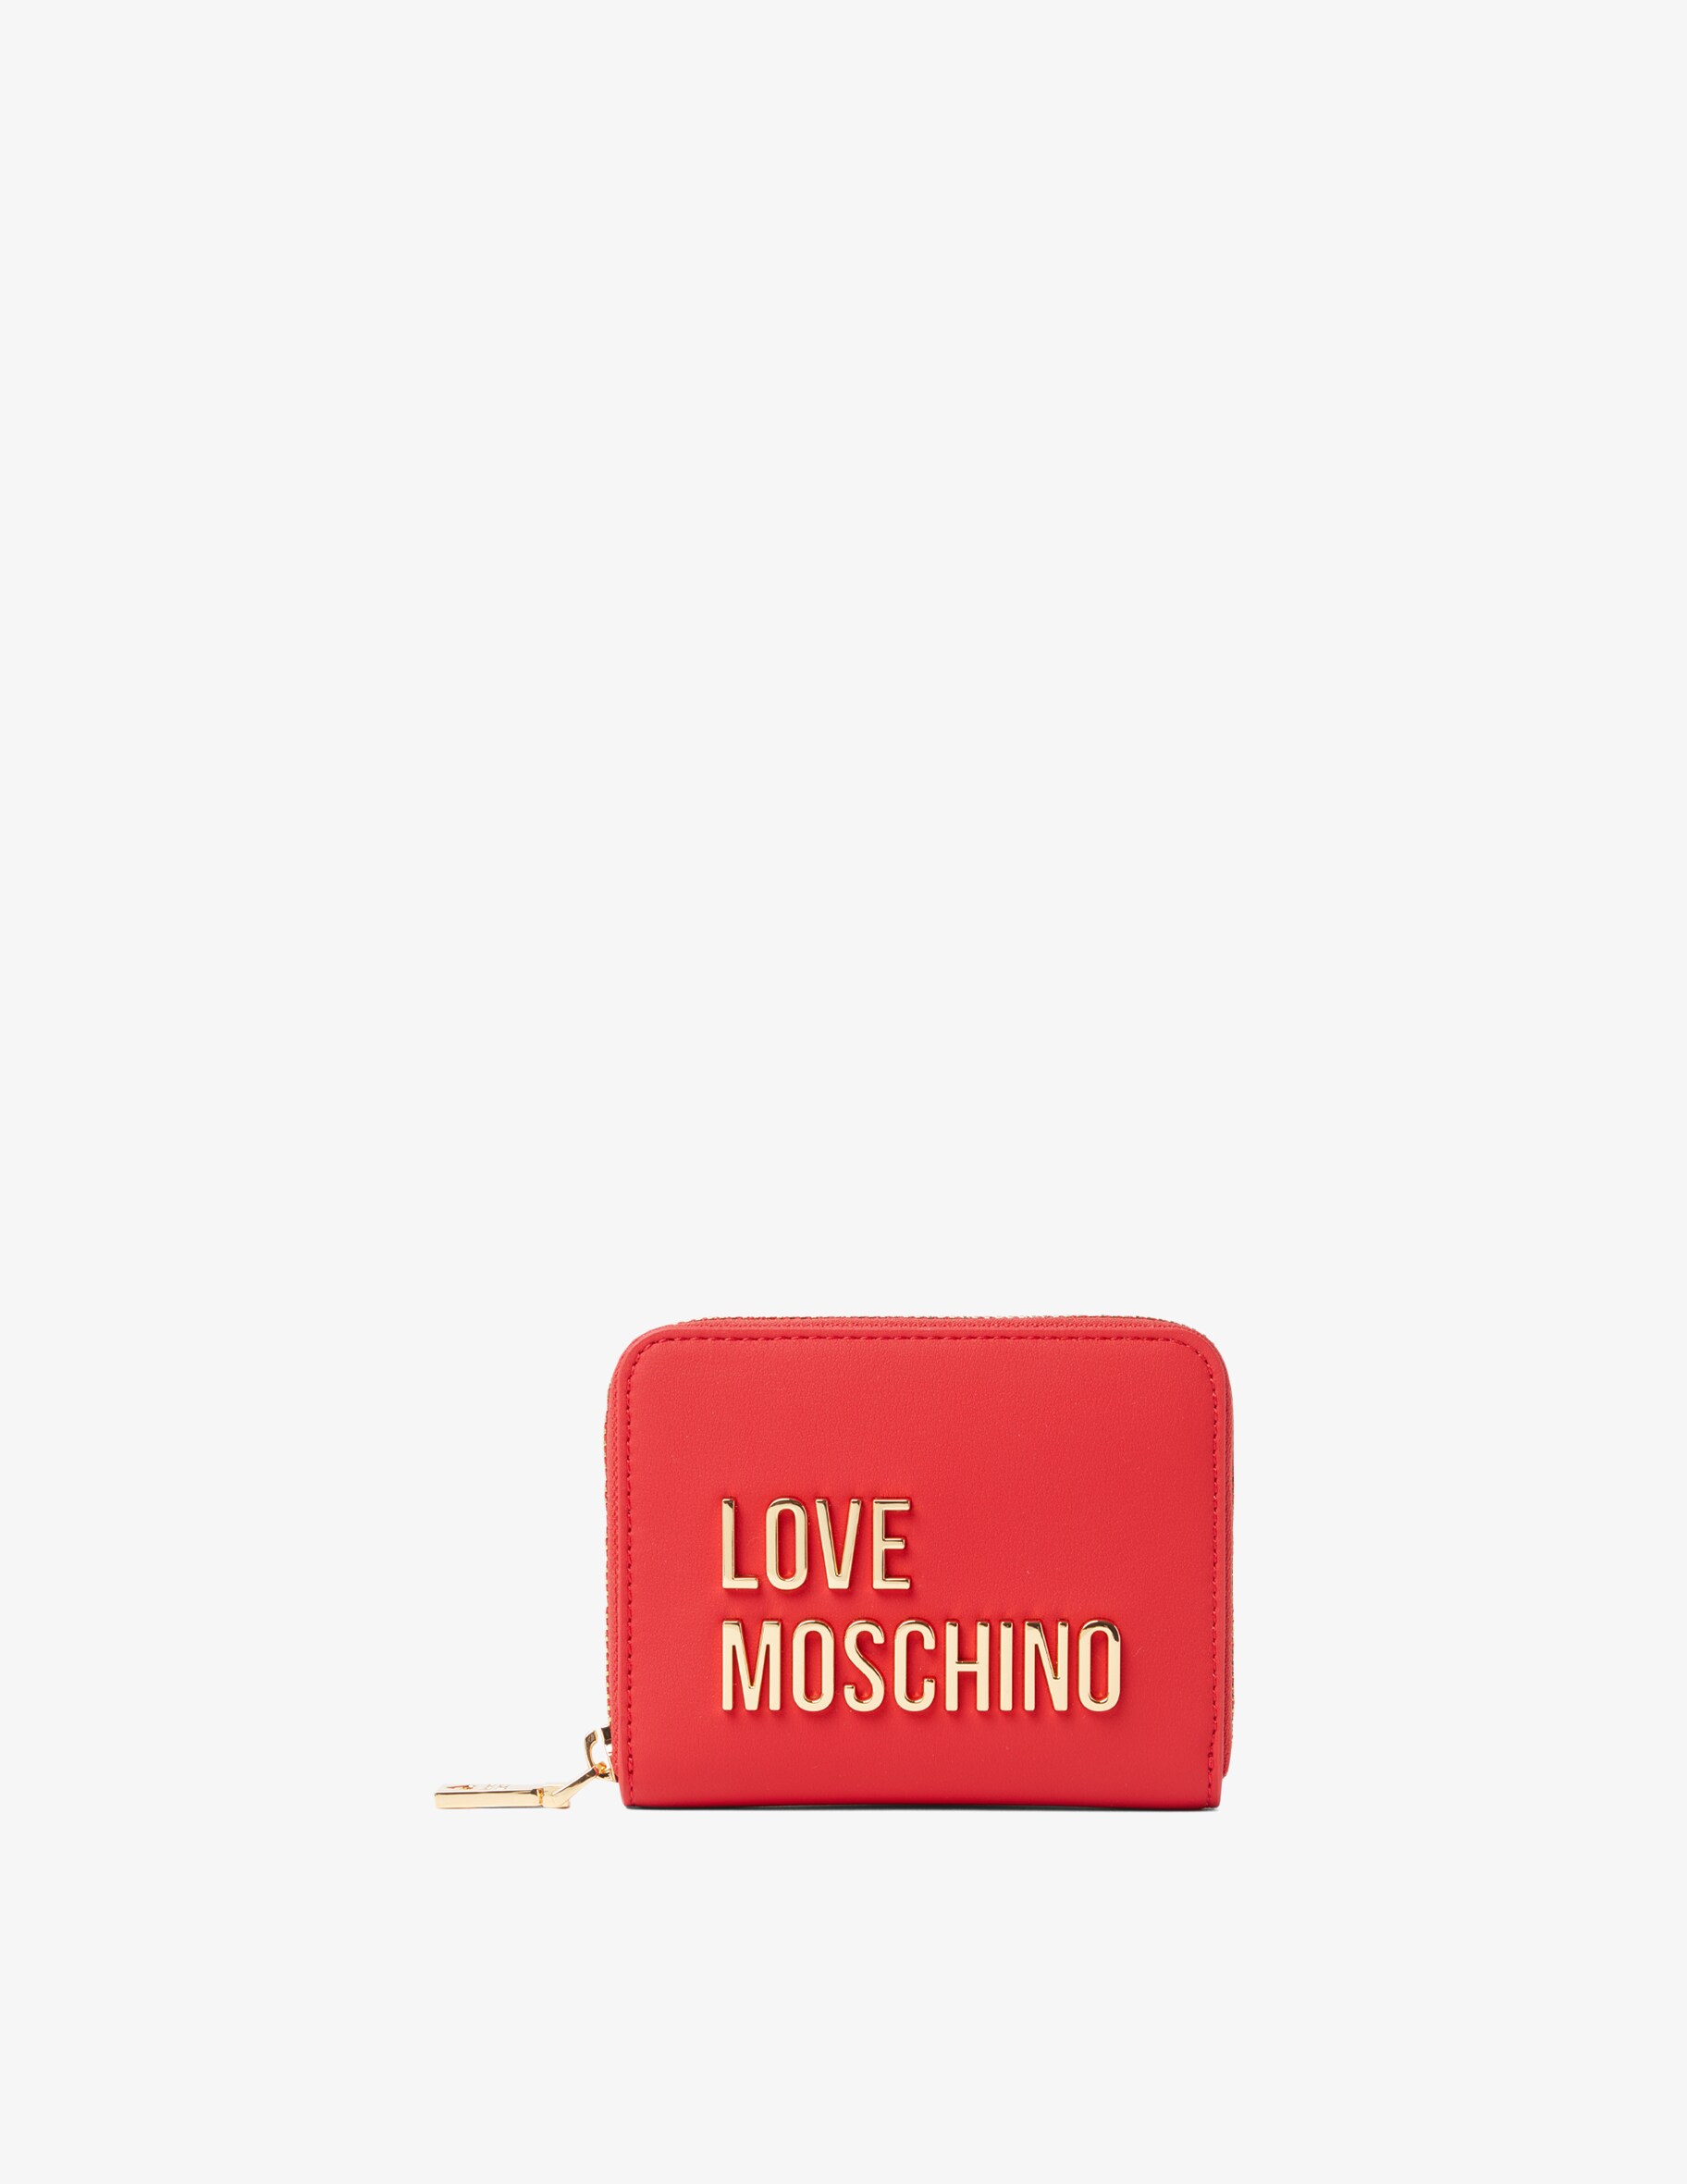 Кошелек на молнии Love Moschino, красный кошелек santoro текстиль на кнопках на молнии красный